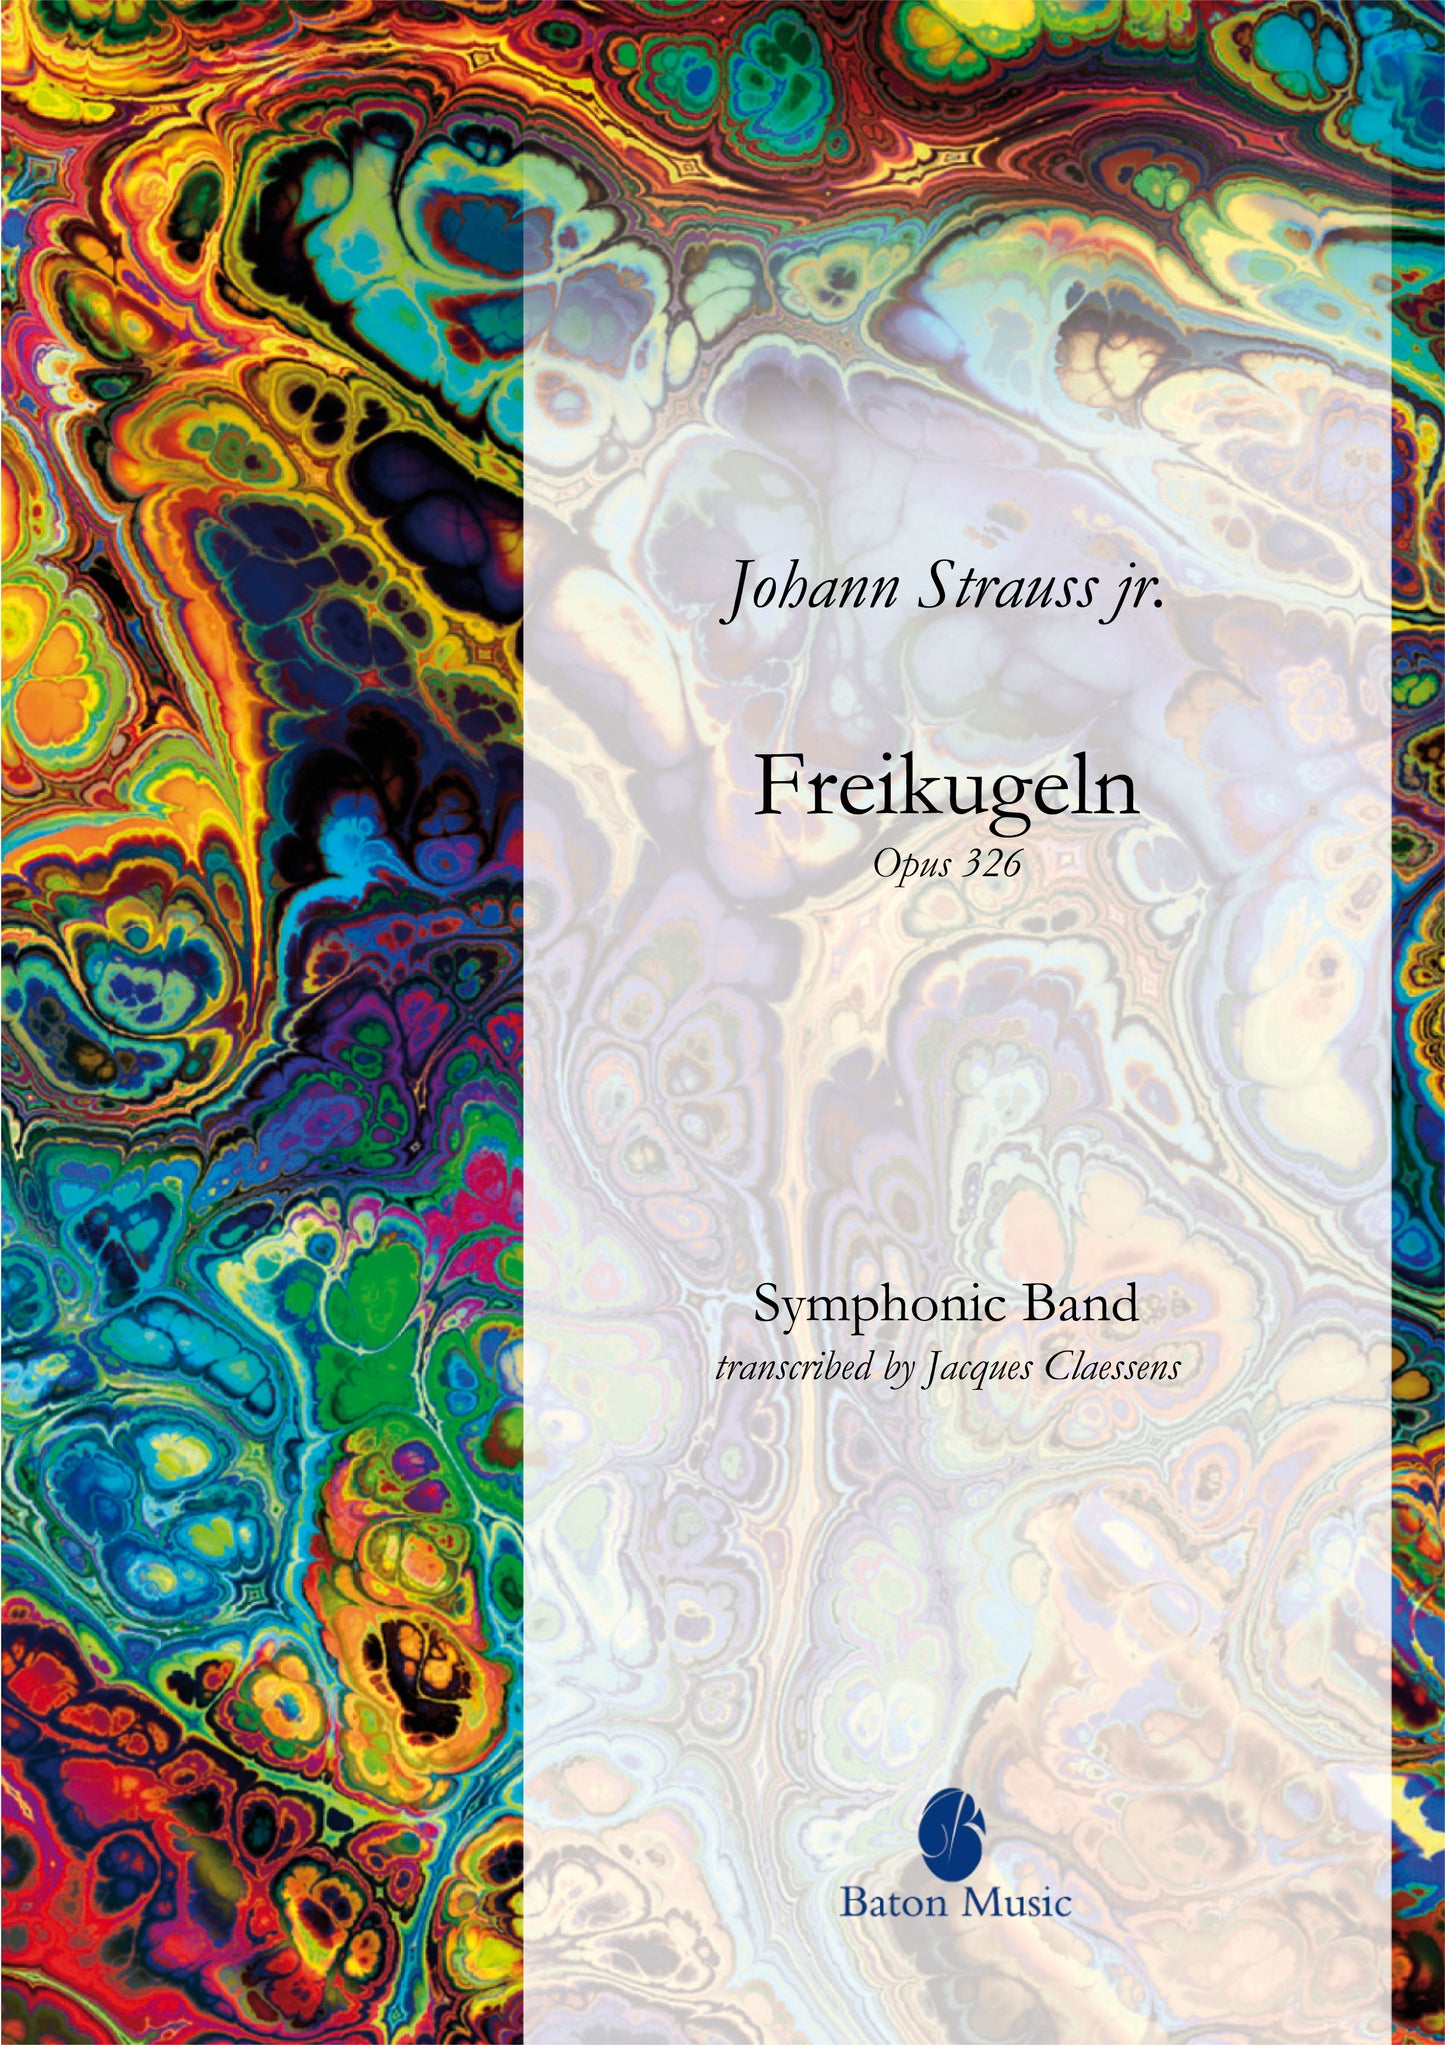 Freikugeln - Johann Strauss